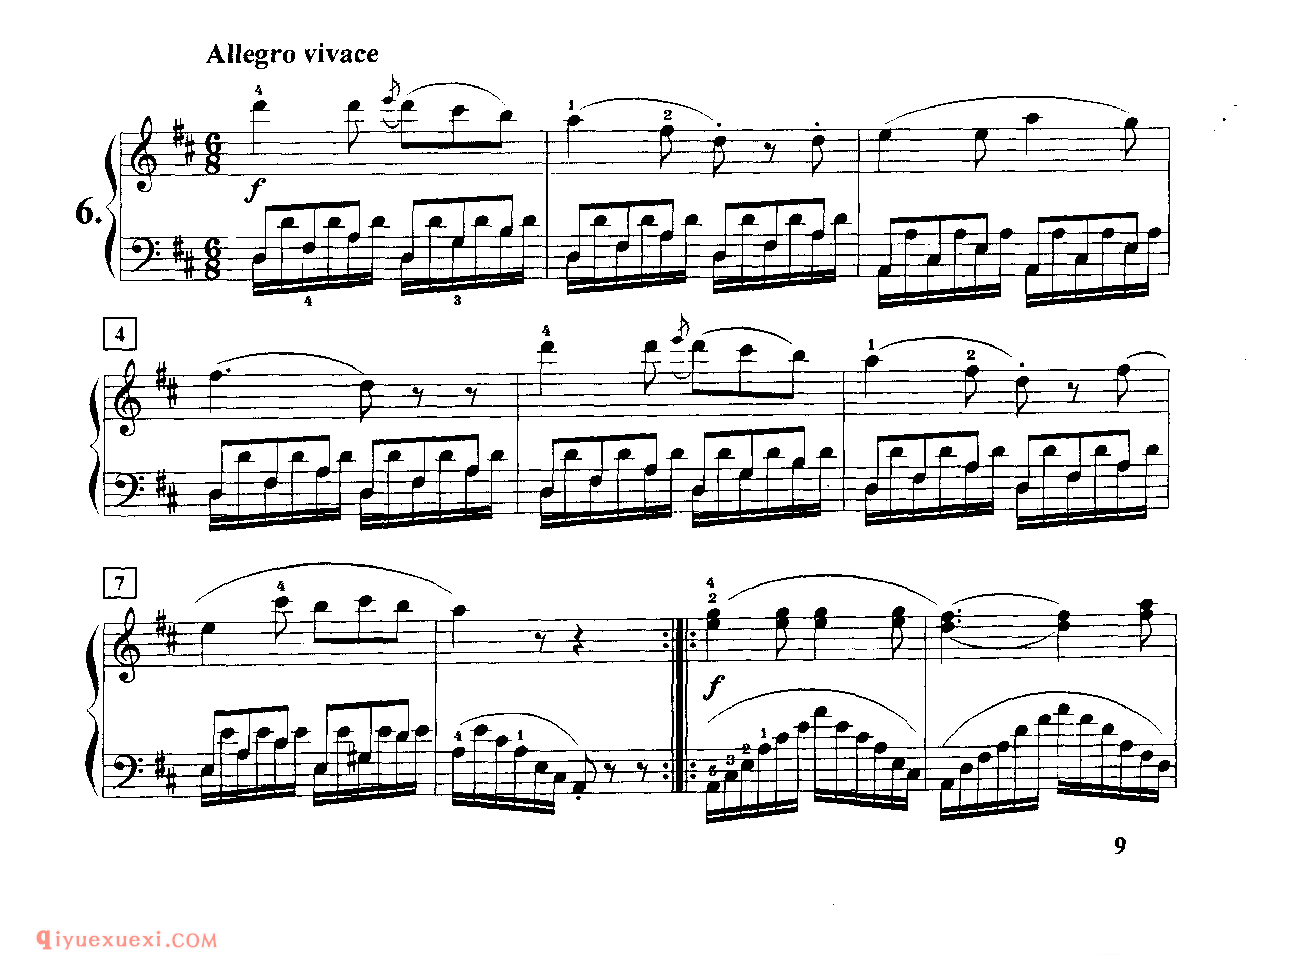 第六条 D大调左手分解和弦练习_车尔尼718_黄伊娜